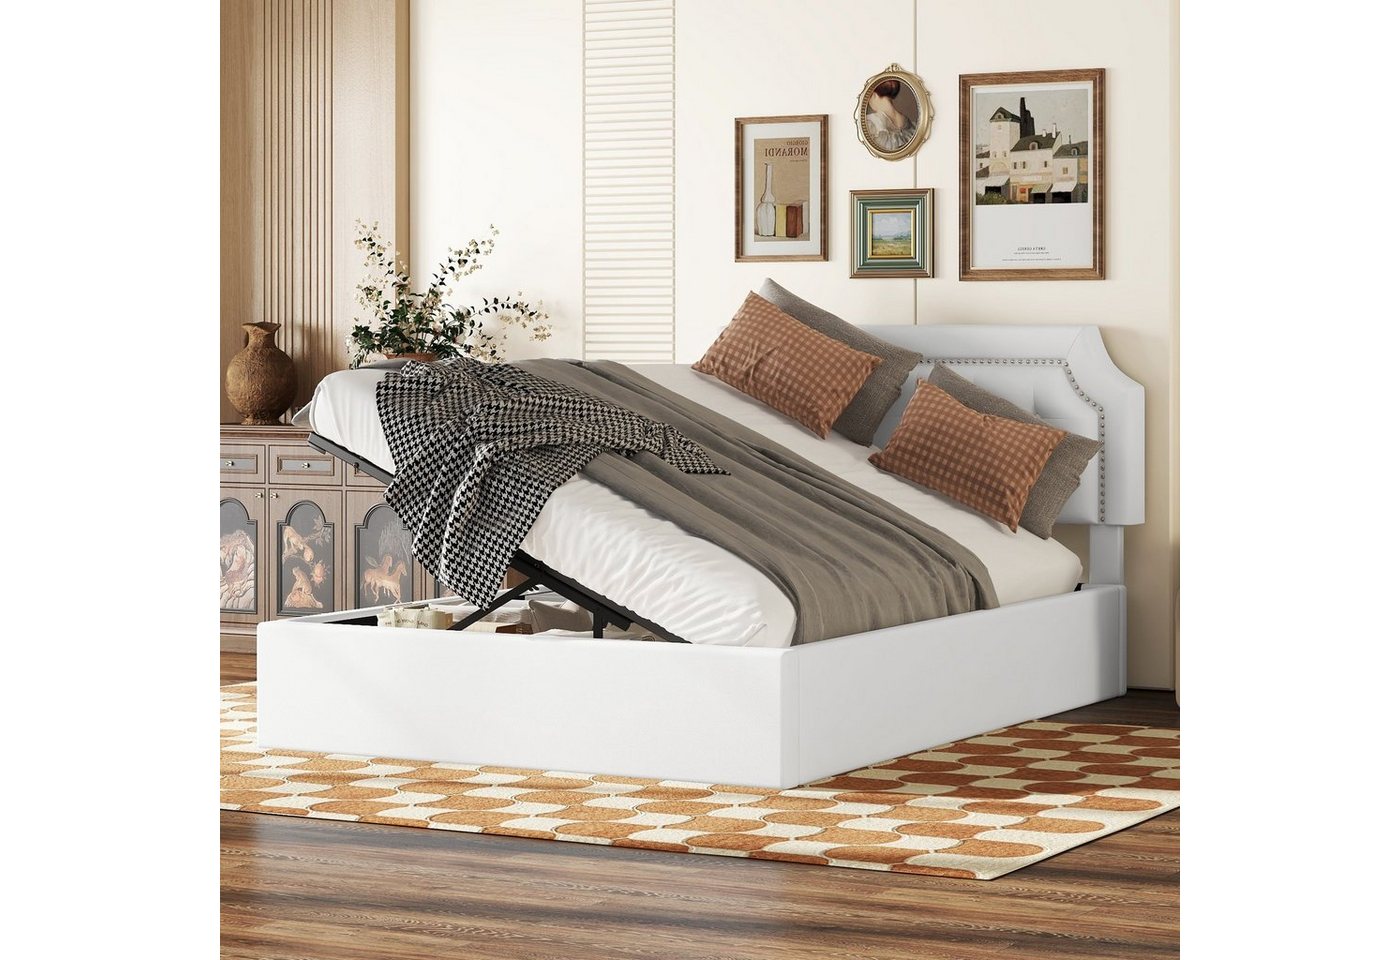 Ulife Polsterbett hydraulisches Zwei-Wege-Bett Stauraumbett Flachbett, minimalistisches Design, 140*200cm von Ulife